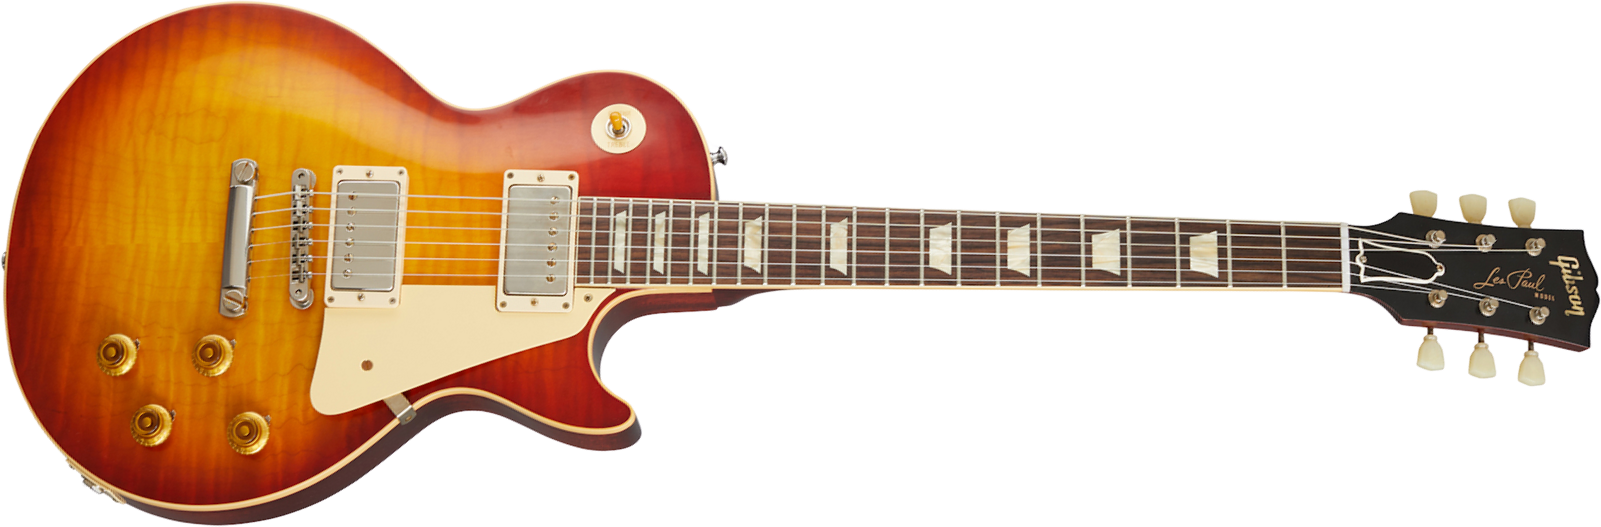 Gibson Custom Shop Les Paul Standard 1959 Reissue 2020 2h Ht Rw - Vos Washed Cherry Sunburst - Guitare Électrique Single Cut - Main picture